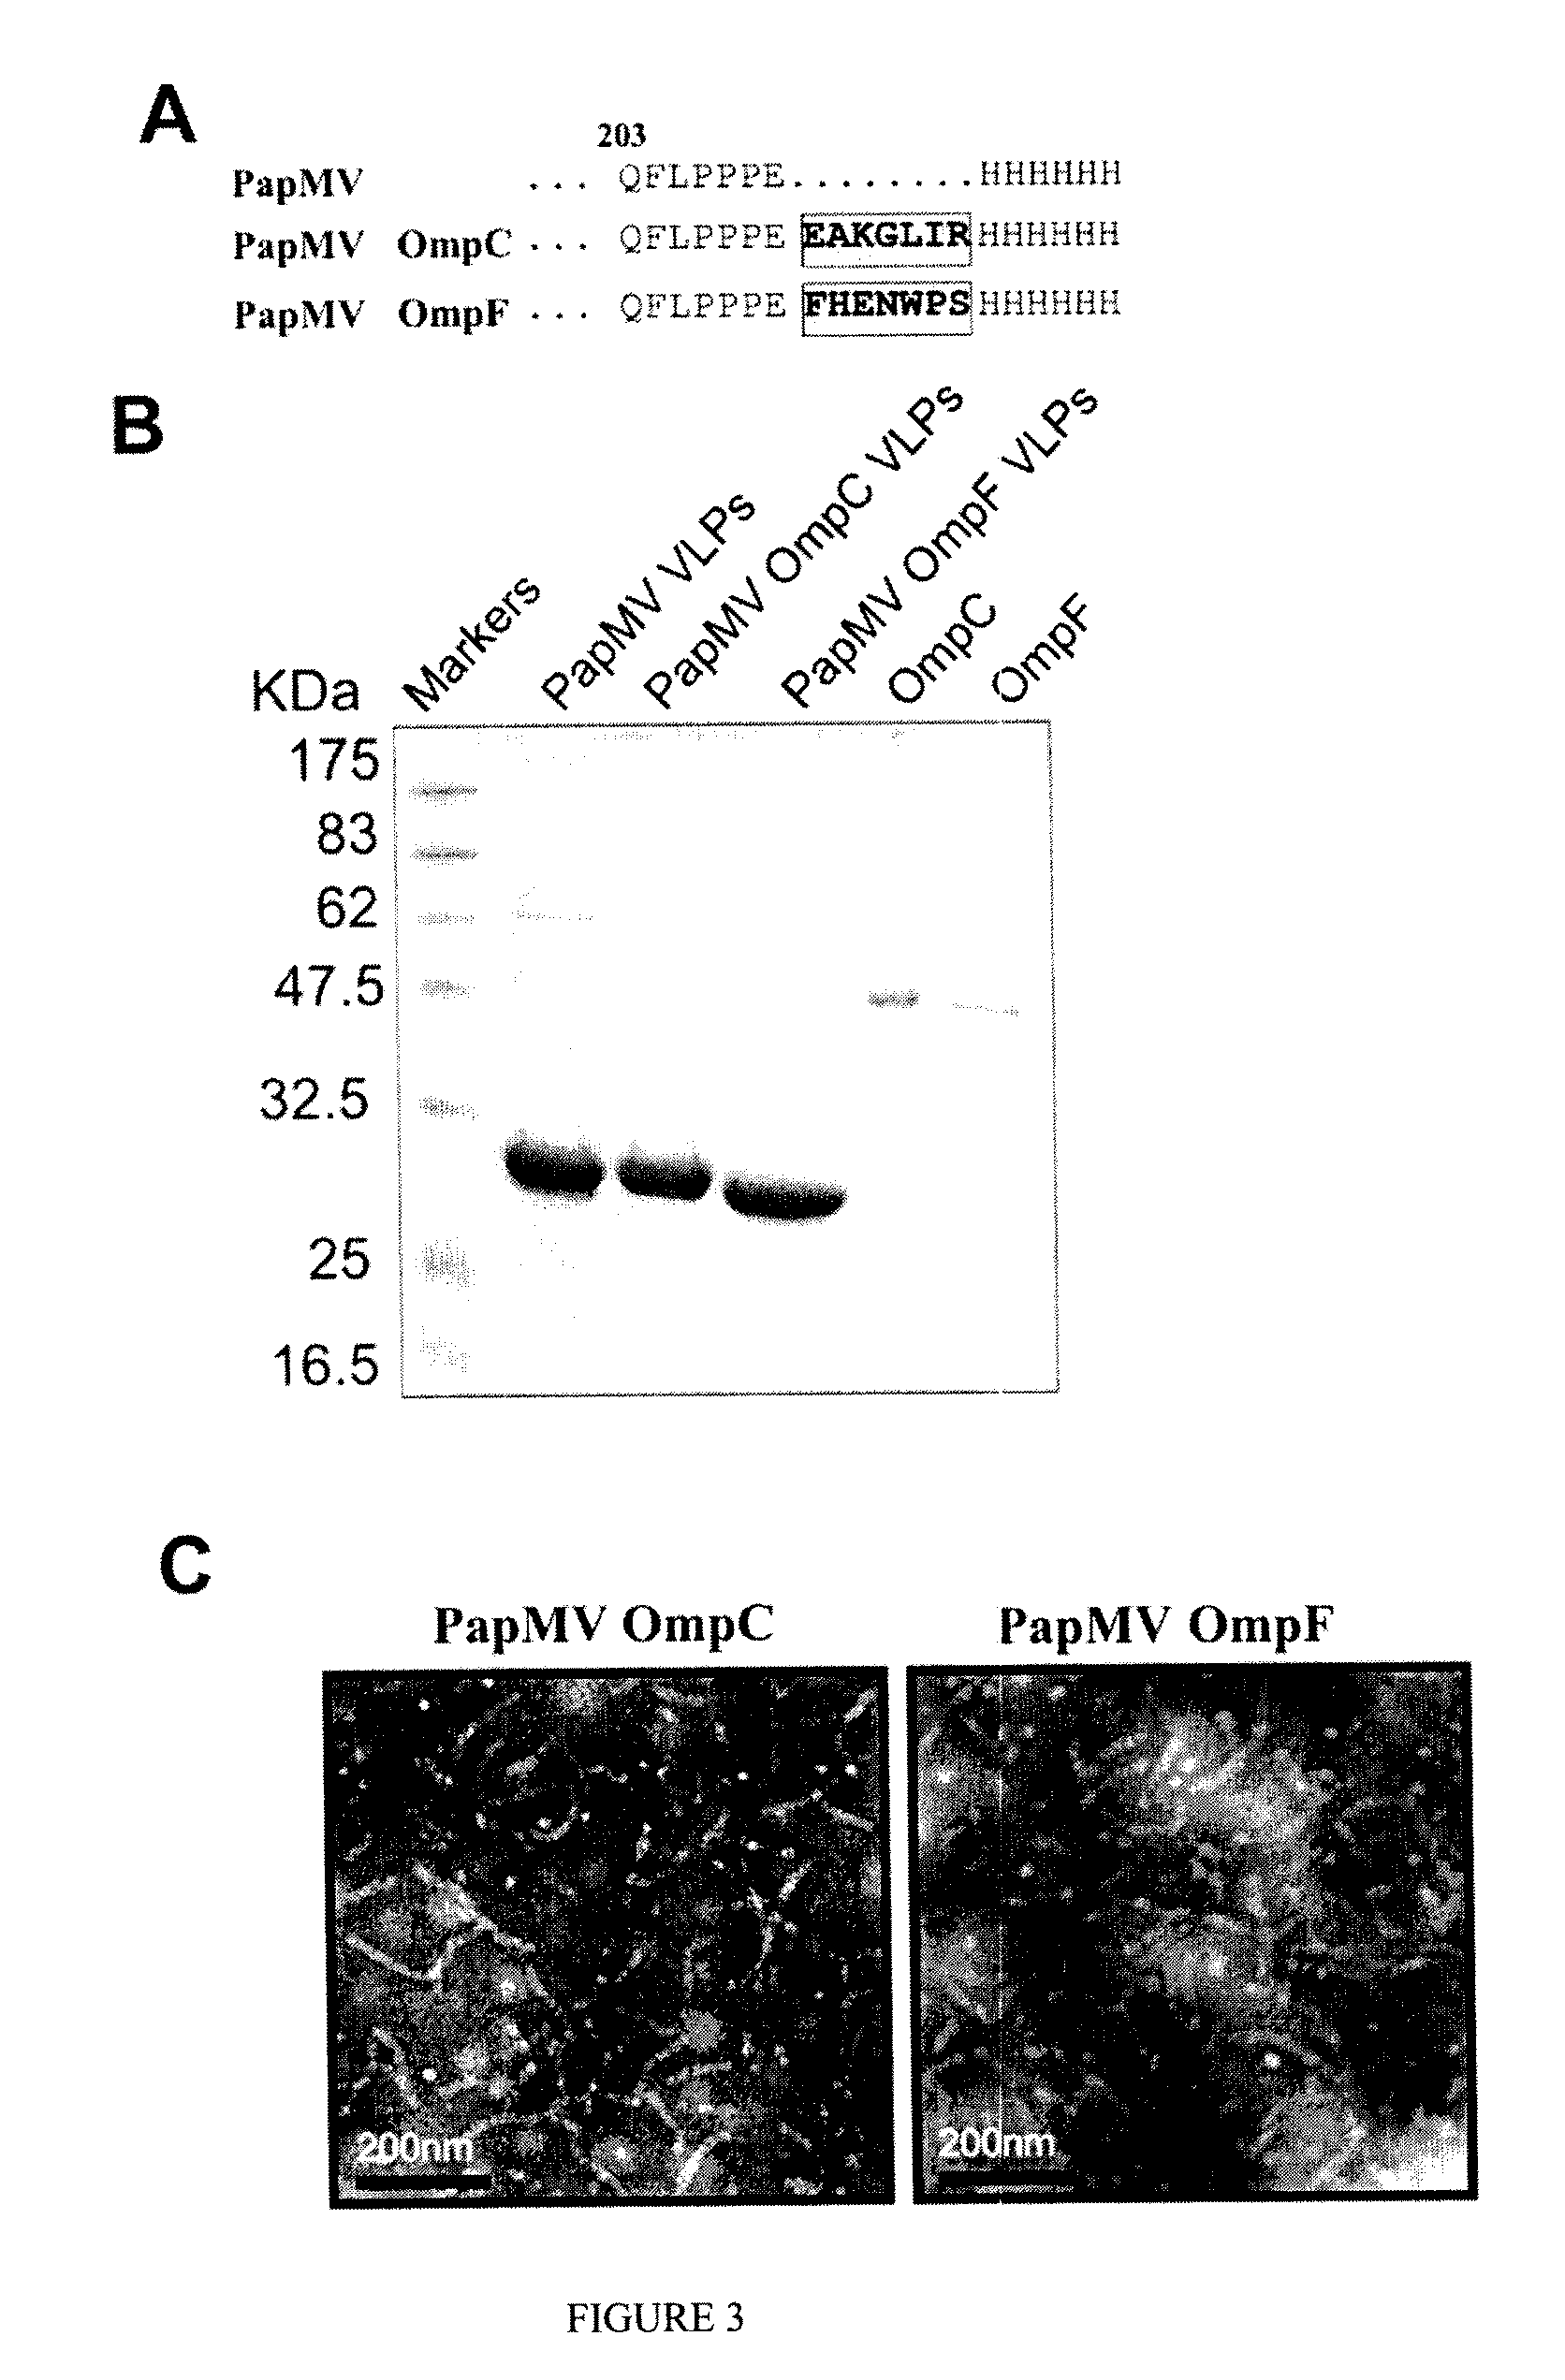 Immunogenic Affinity-Conjugated Antigen Systems Based on Papaya Mosaic Virus and Uses Thereof